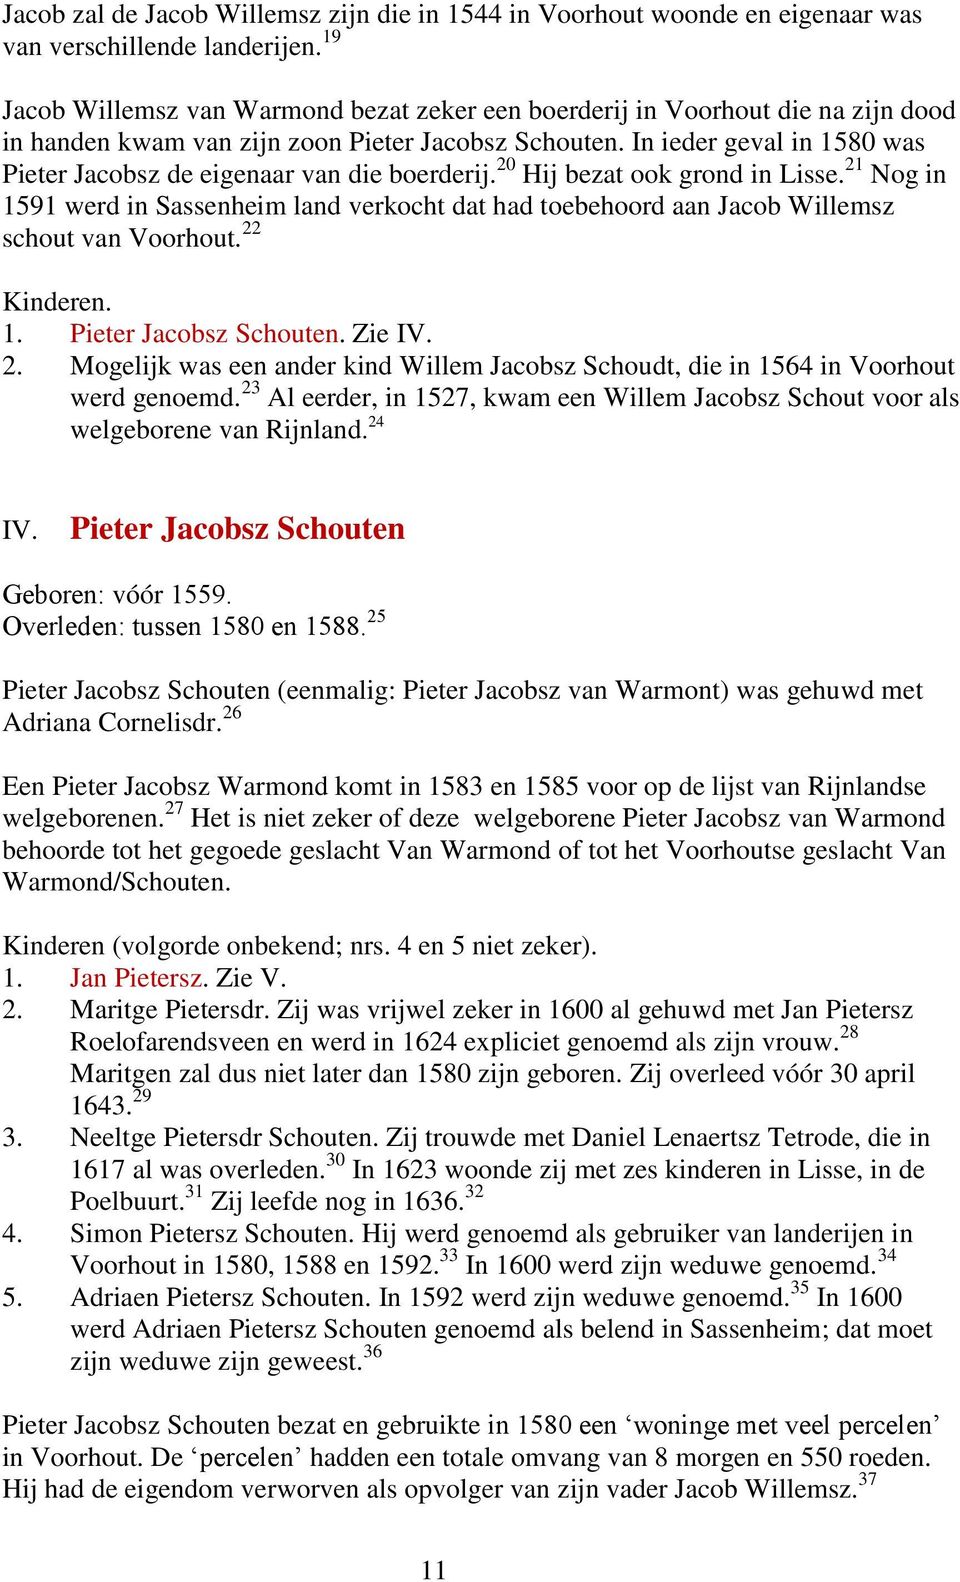 In ieder geval in 1580 was Pieter Jacobsz de eigenaar van die boerderij. 20 Hij bezat ook grond in Lisse.